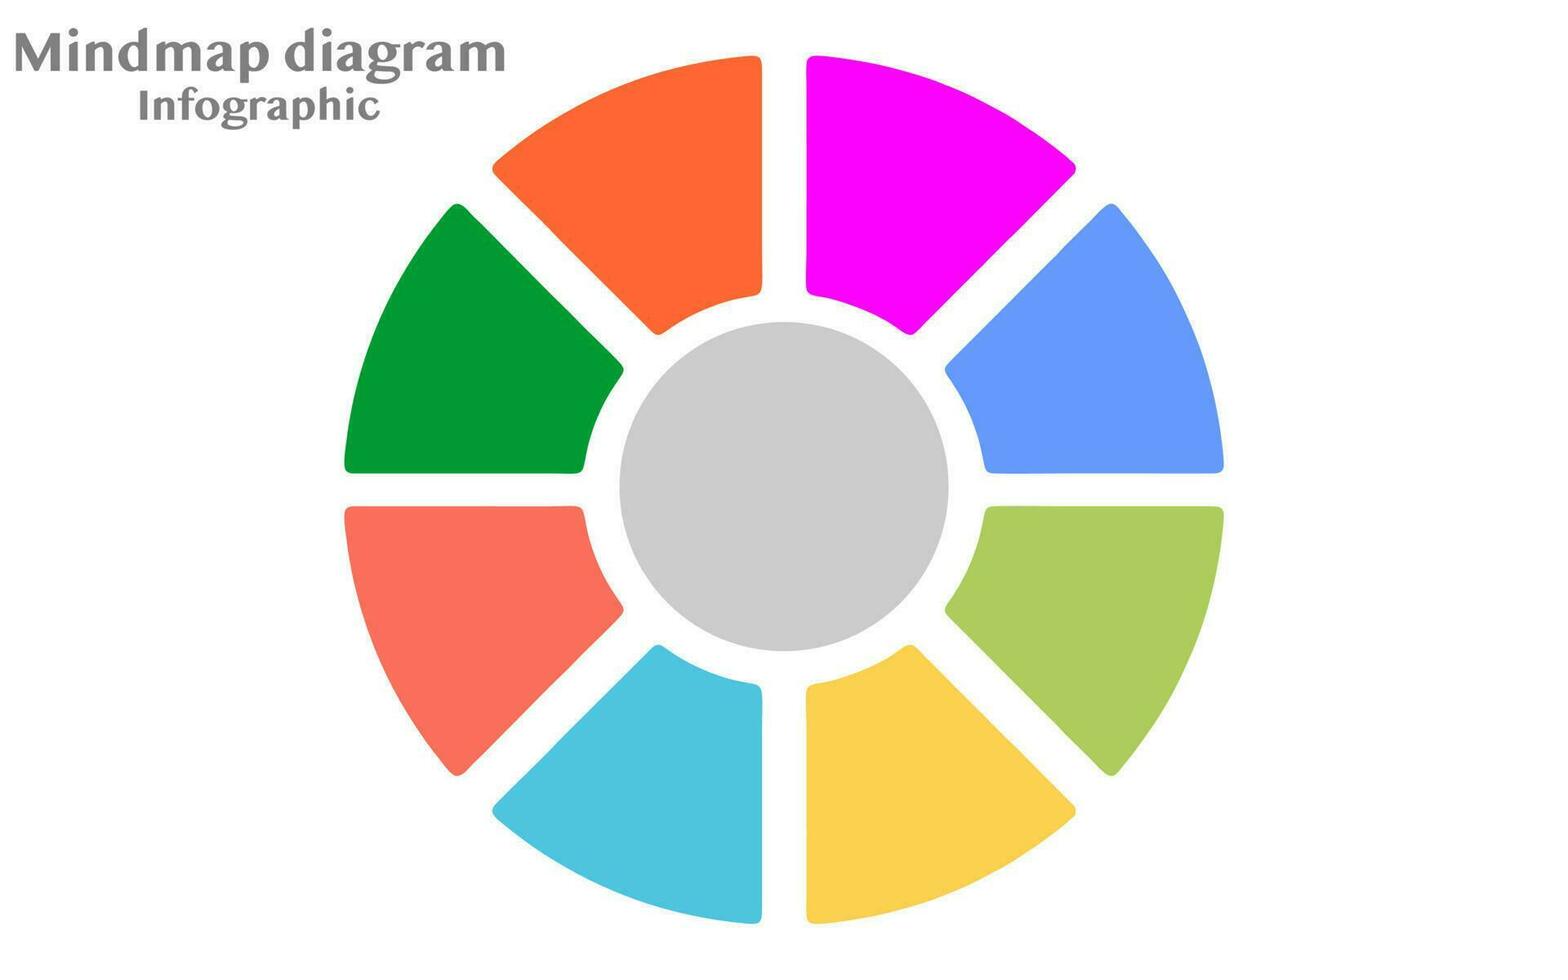 cirkel följediagram mall. social nätverkande infografik, infographic mall för företag. steg modern mindmap diagram med cirklar och ämne titlar, presentation vektor infographic